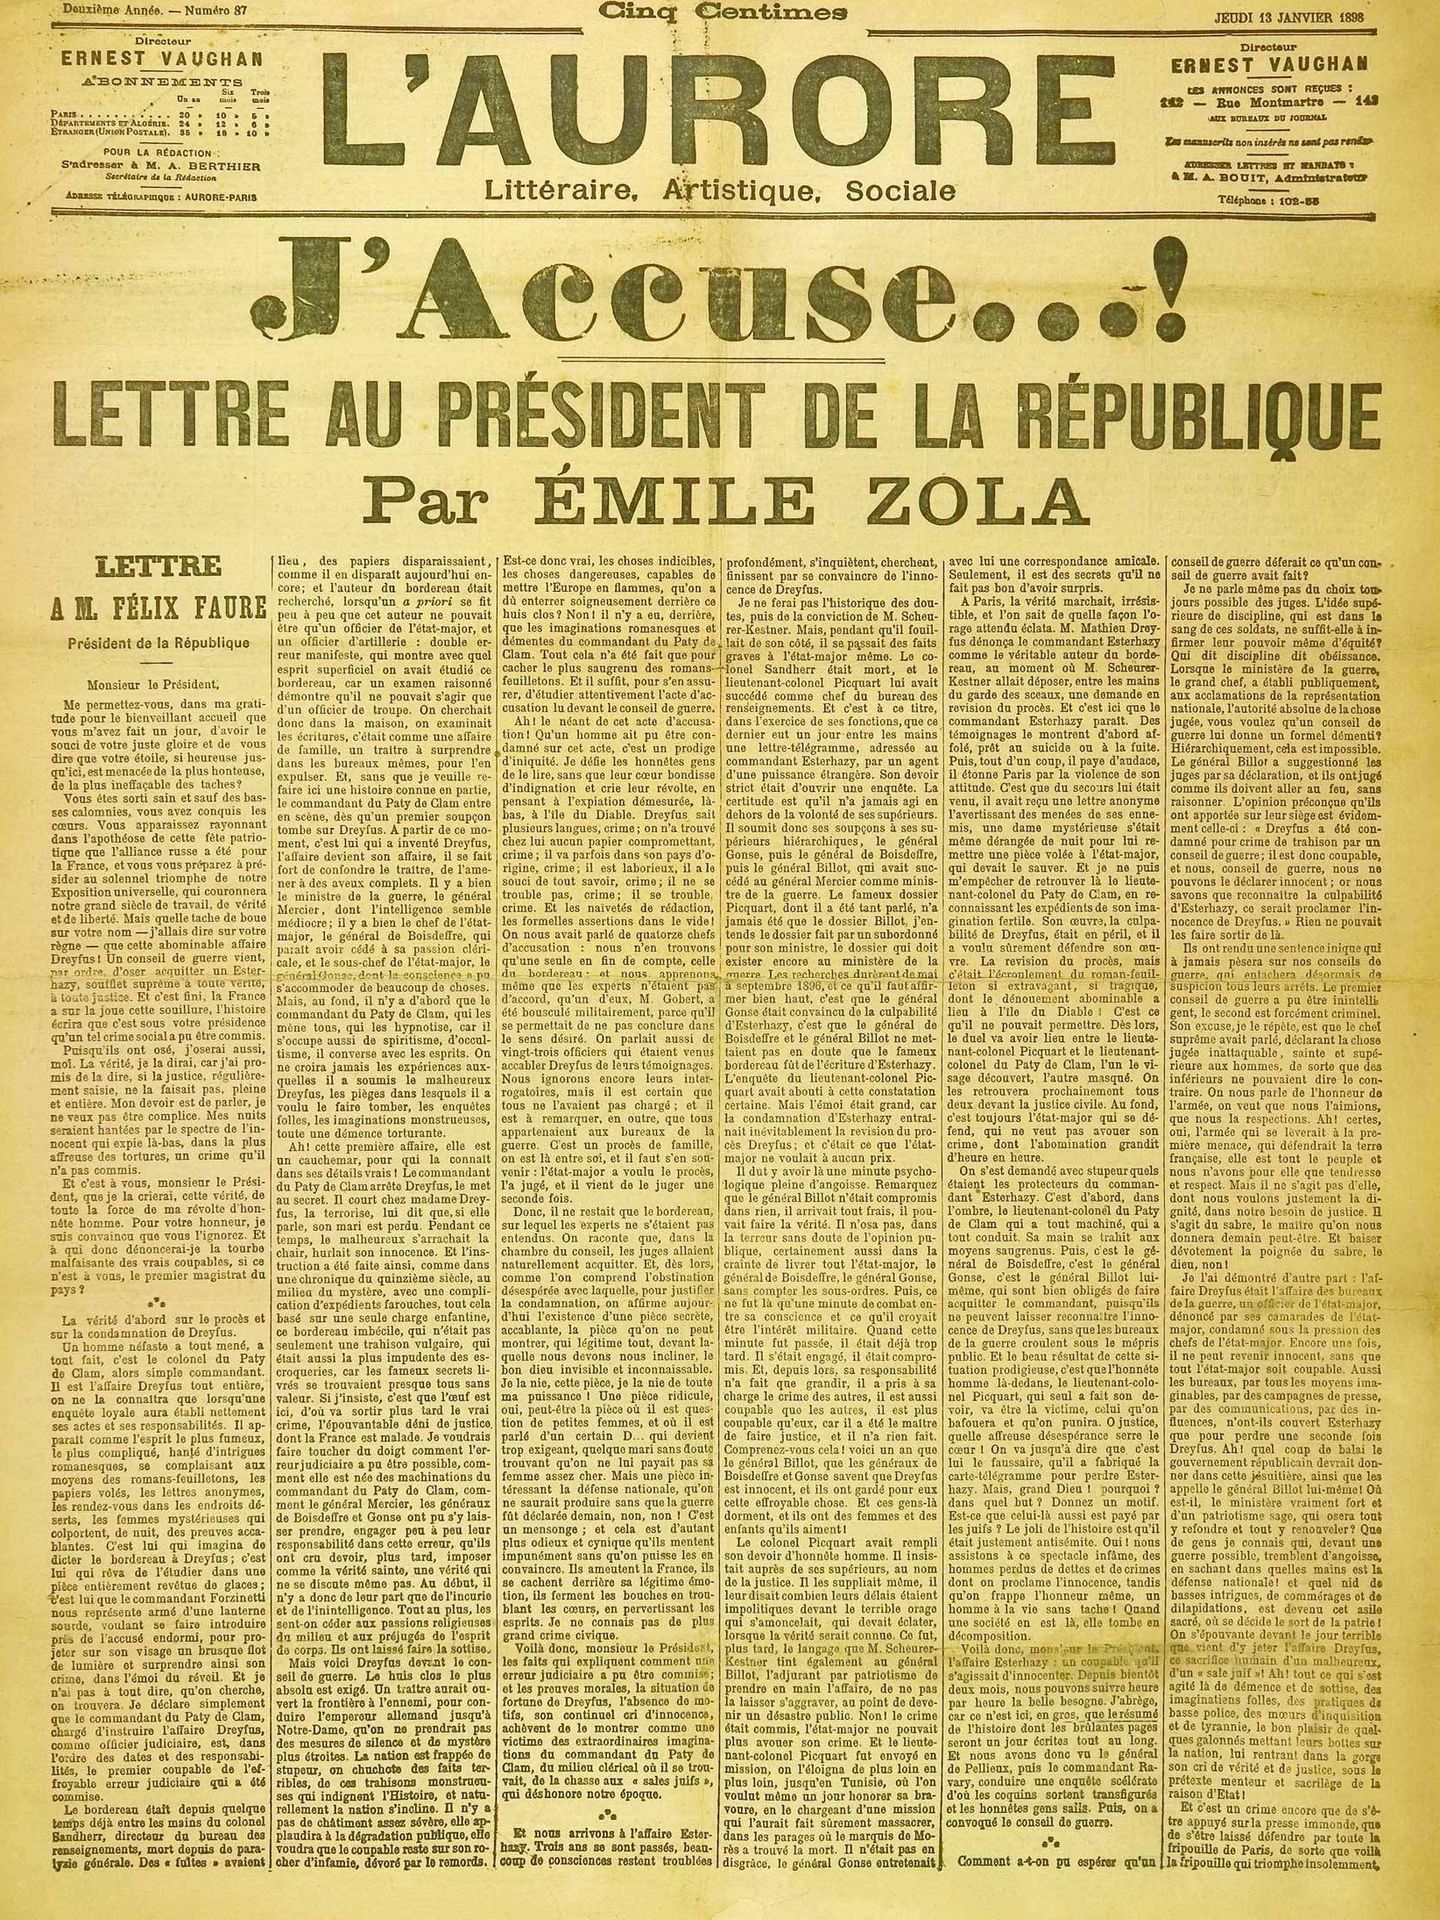 'L'Aurore' con el 'J'Accuse...!' de Zola